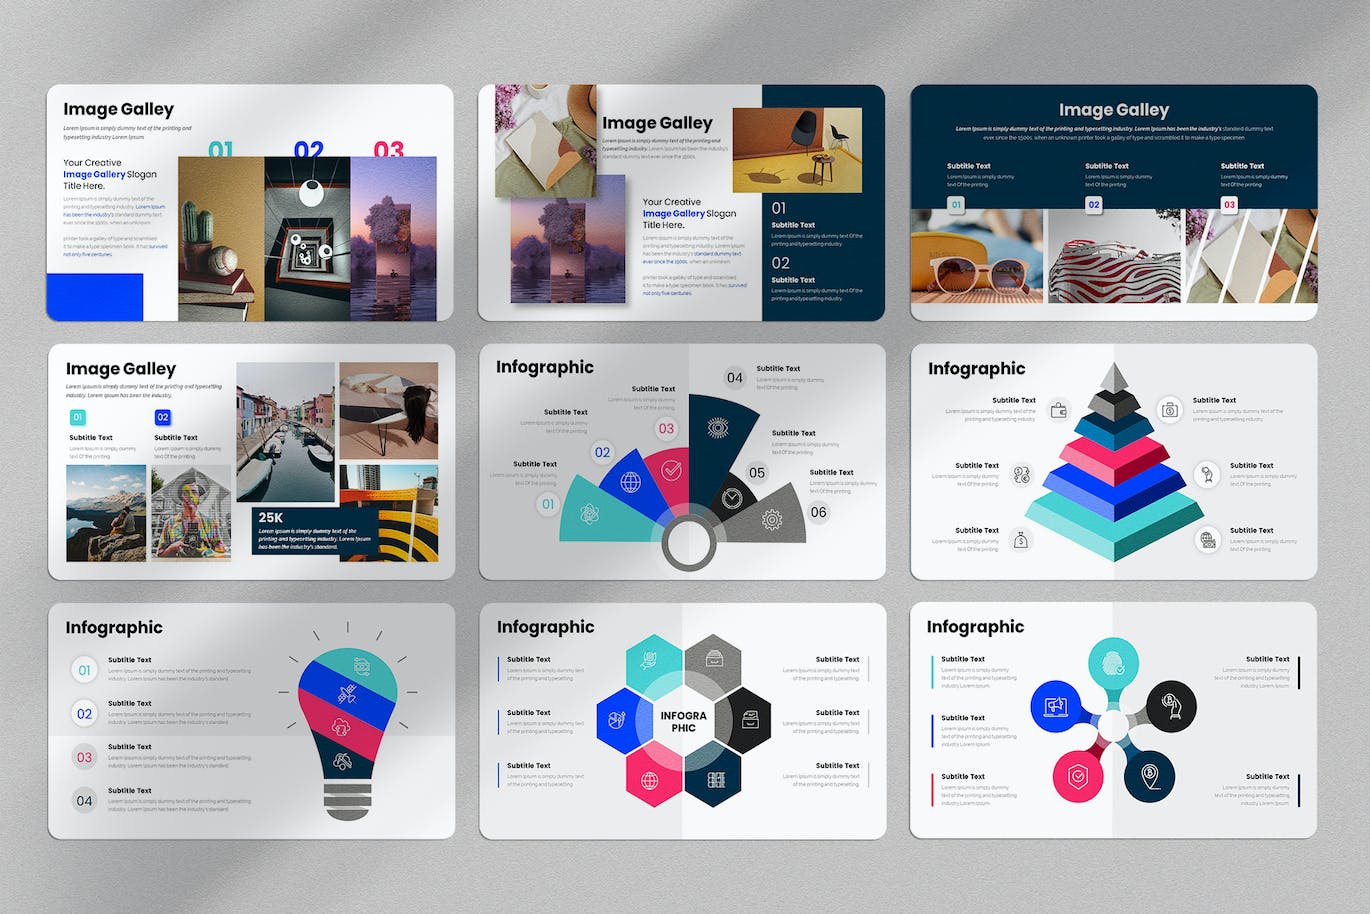 商业计划方案谷歌幻灯片演示文稿模板 Business Plan Google Slides Presentation Template 幻灯图表 第9张